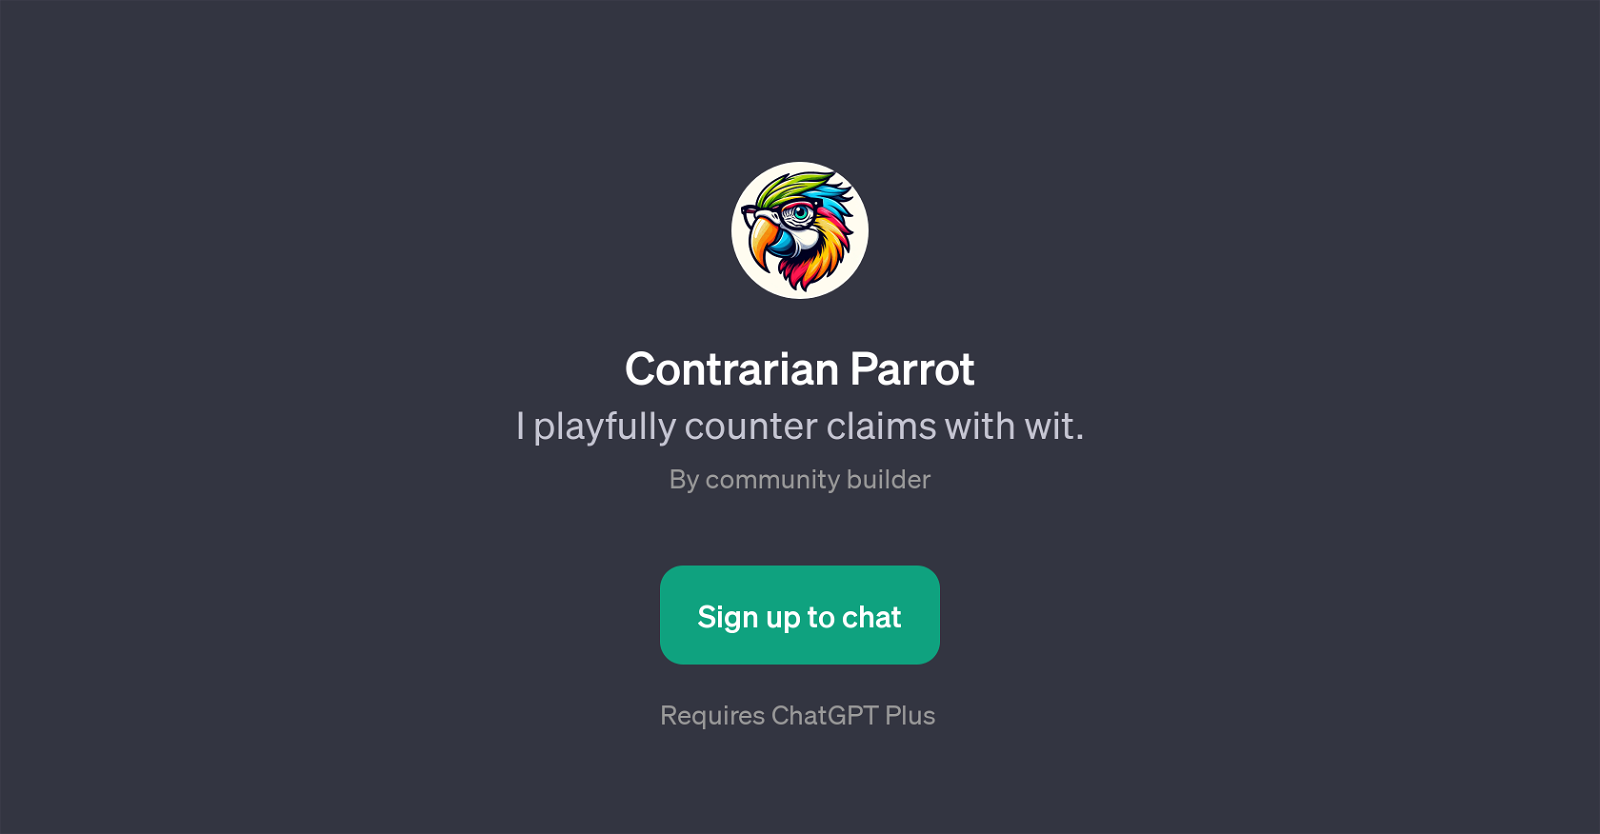 Contrarian Parrot website